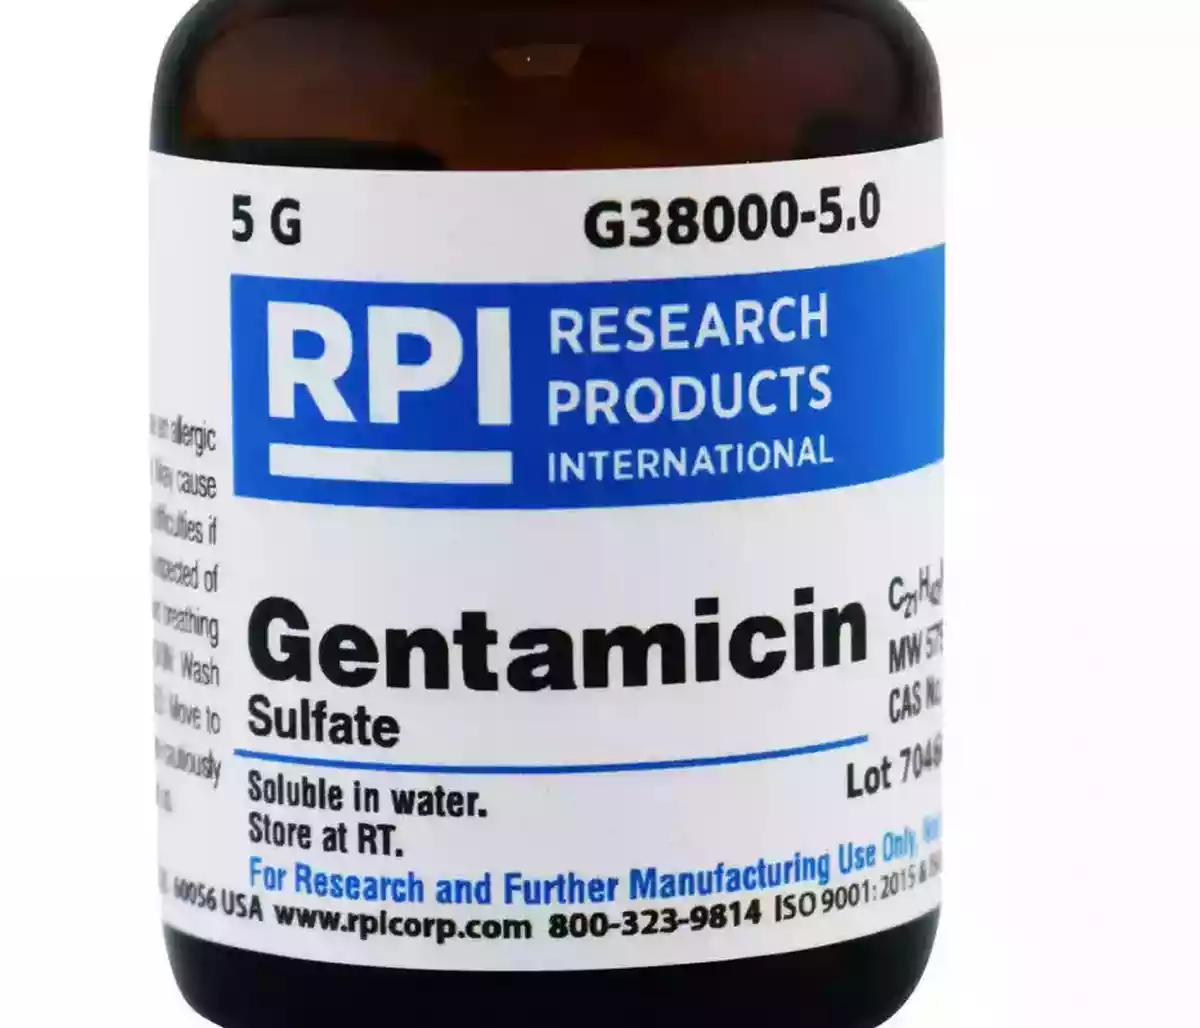 Φάρμακο Gentamicin και γενταμυκίνη (gentamicin) - αντιβιοτικό ευρέος φάσματος